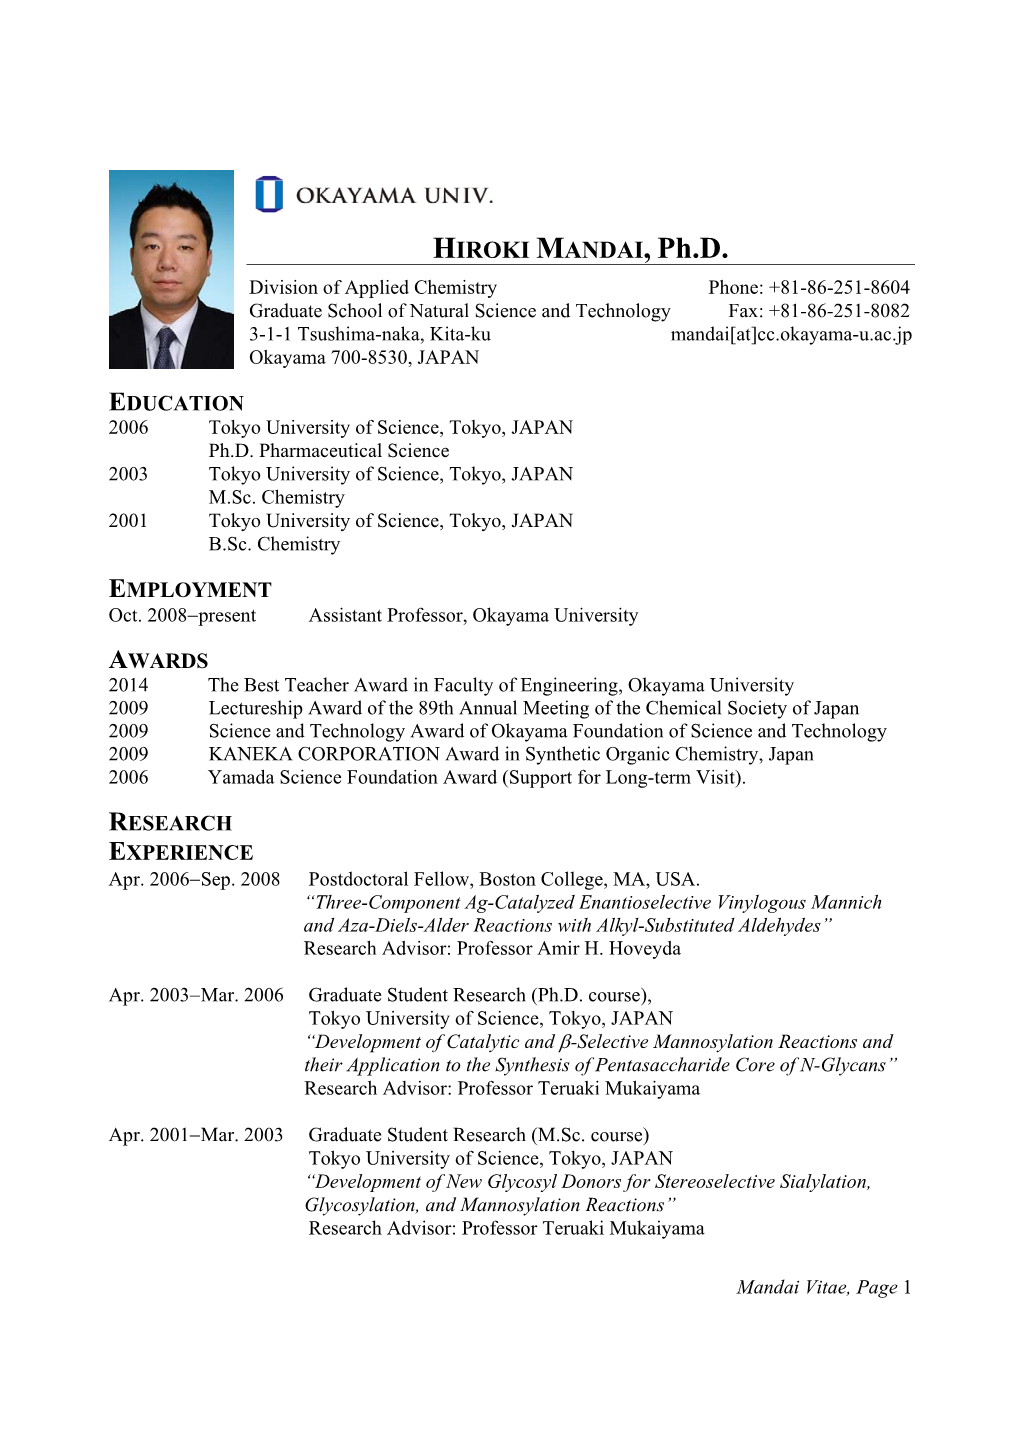 HIROKI MANDAI, Ph.D